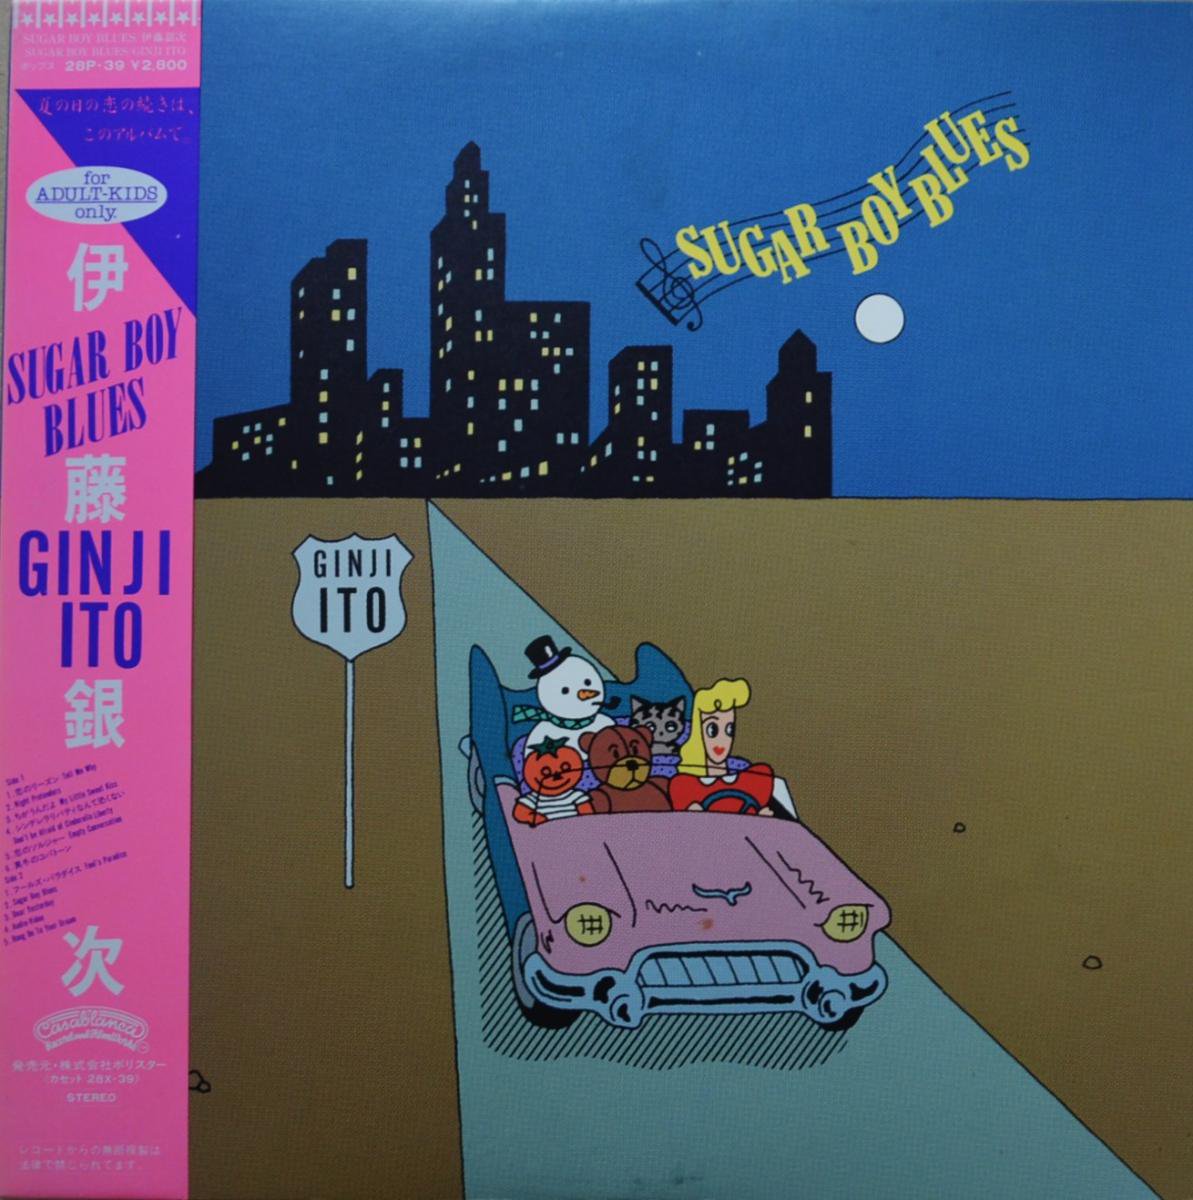 伊藤銀次 GINJI ITO / SUGAR BOY BLUES (LP)